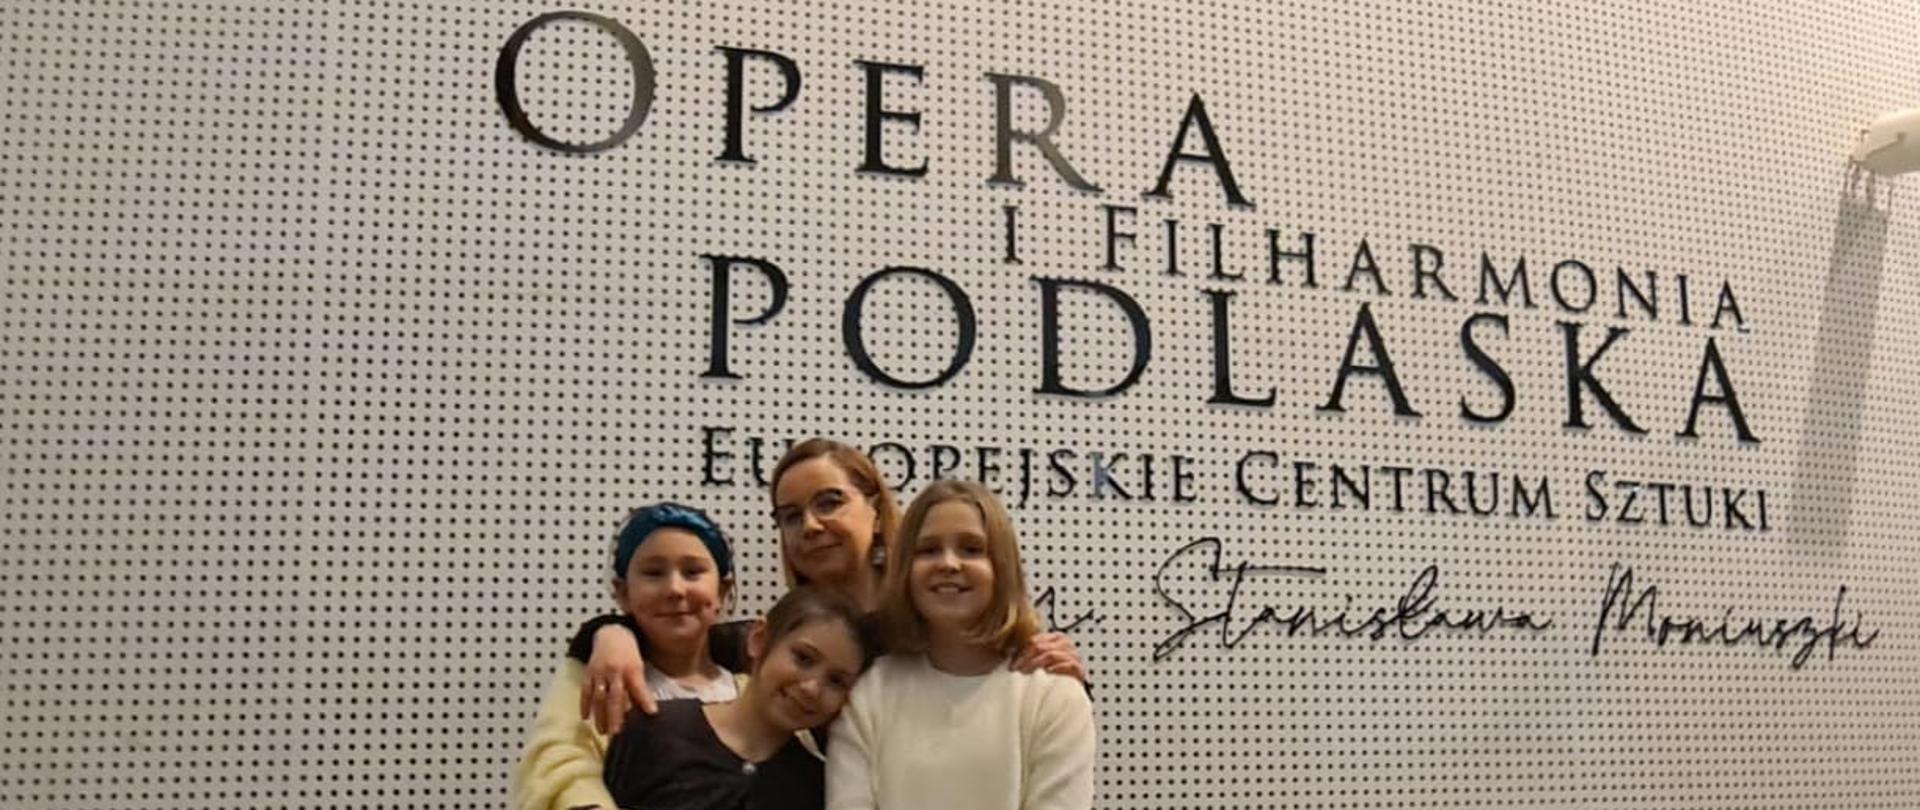 Zdjęcie przedstawia trzy uczennice i ich nauczycielkę, stojące na tle białej ściany z logo Opery i Filharmonii Podlaskiej - Europejskiego Centrum Sztuki im. S. Moniuszki.